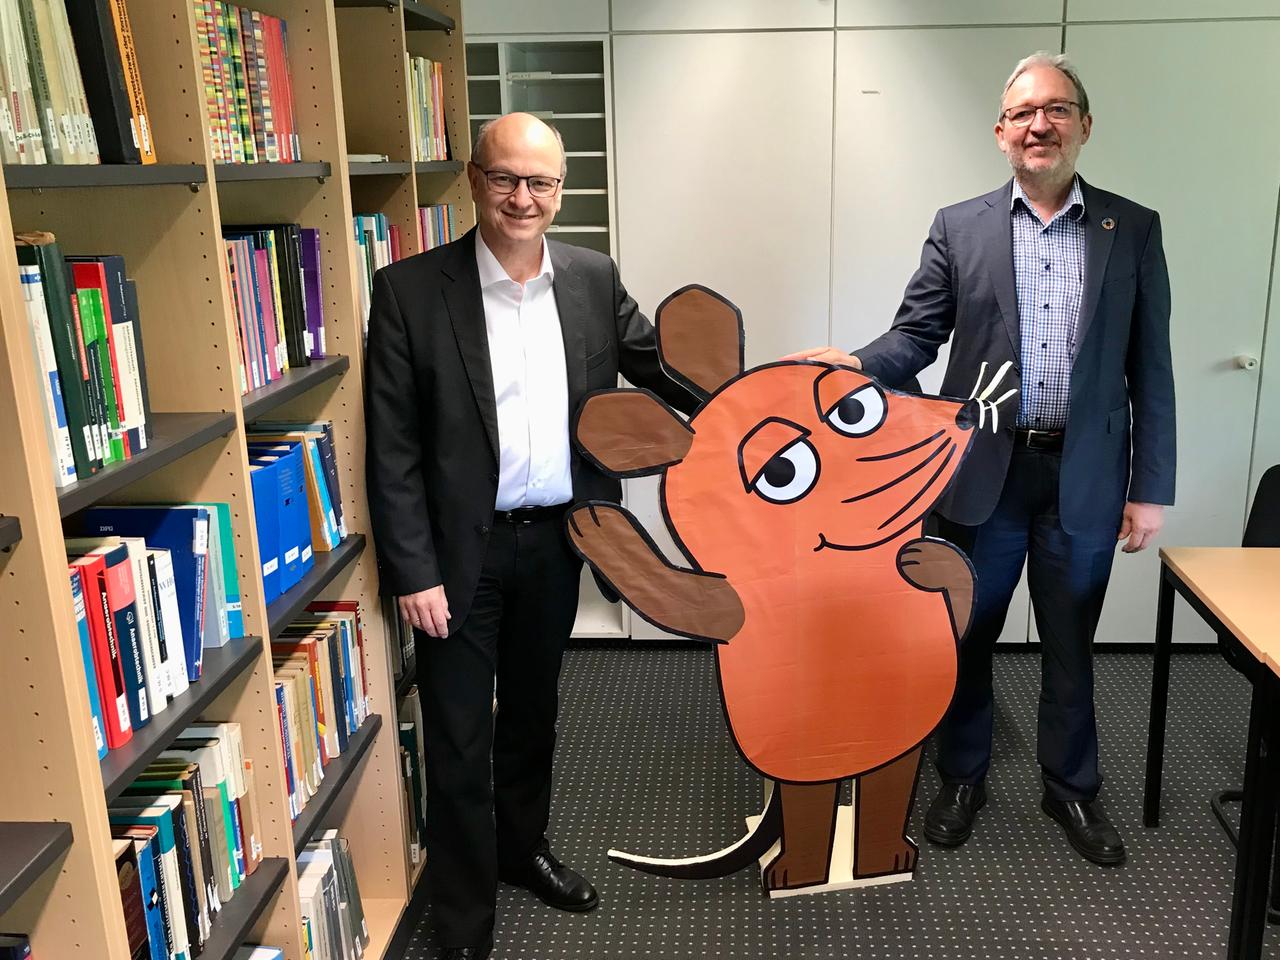 Daniel Goldmann und Dirk Schöps stehen in einem Innenraum. In ihrer Mitte haben sie eine zweidimensionale Mausfigur aus der ARD-Sendung "Die Sendung mit der Maus". Links sind Bücherregale zu sehen. Goldmann und Schöps tragen dunkle Zeugnisse. 